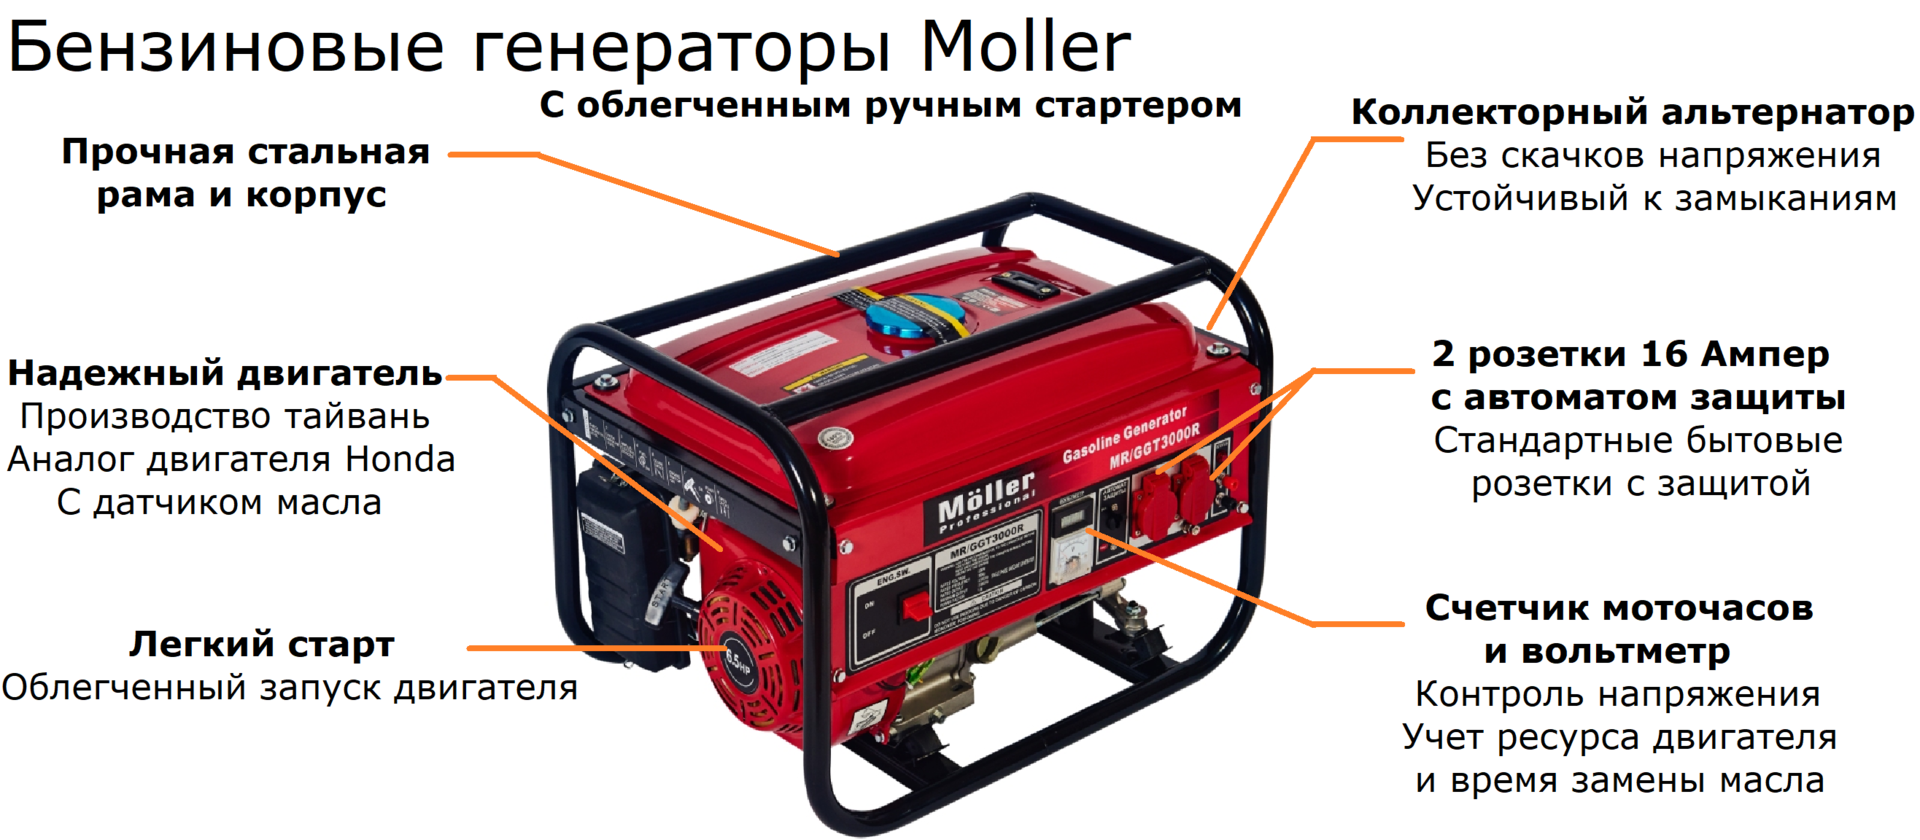 Дизельный генератор 5 — 5,5 кВт: обзор характеристик популярных моделей и как грамотно выбрать устройство